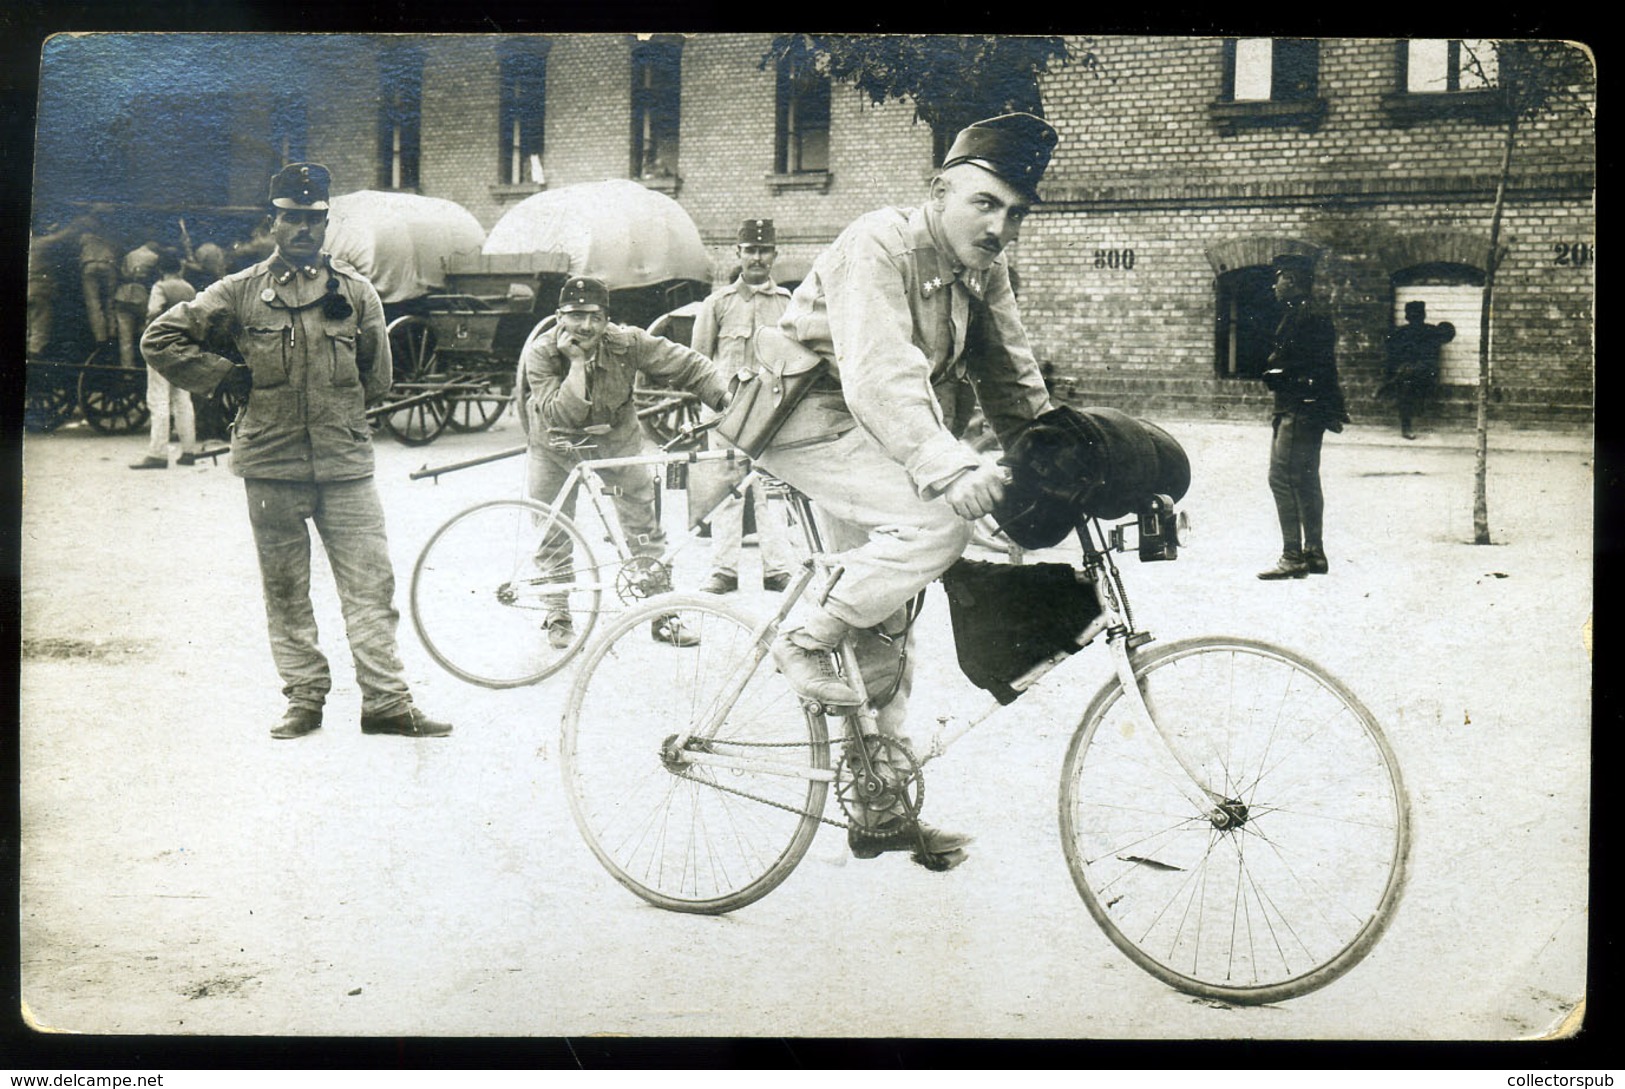 ZSOMBOLYA 1912. 3. Honvéd Huszár Ezred , Kerékpáros Század, Fotós Képeslap - Hungary